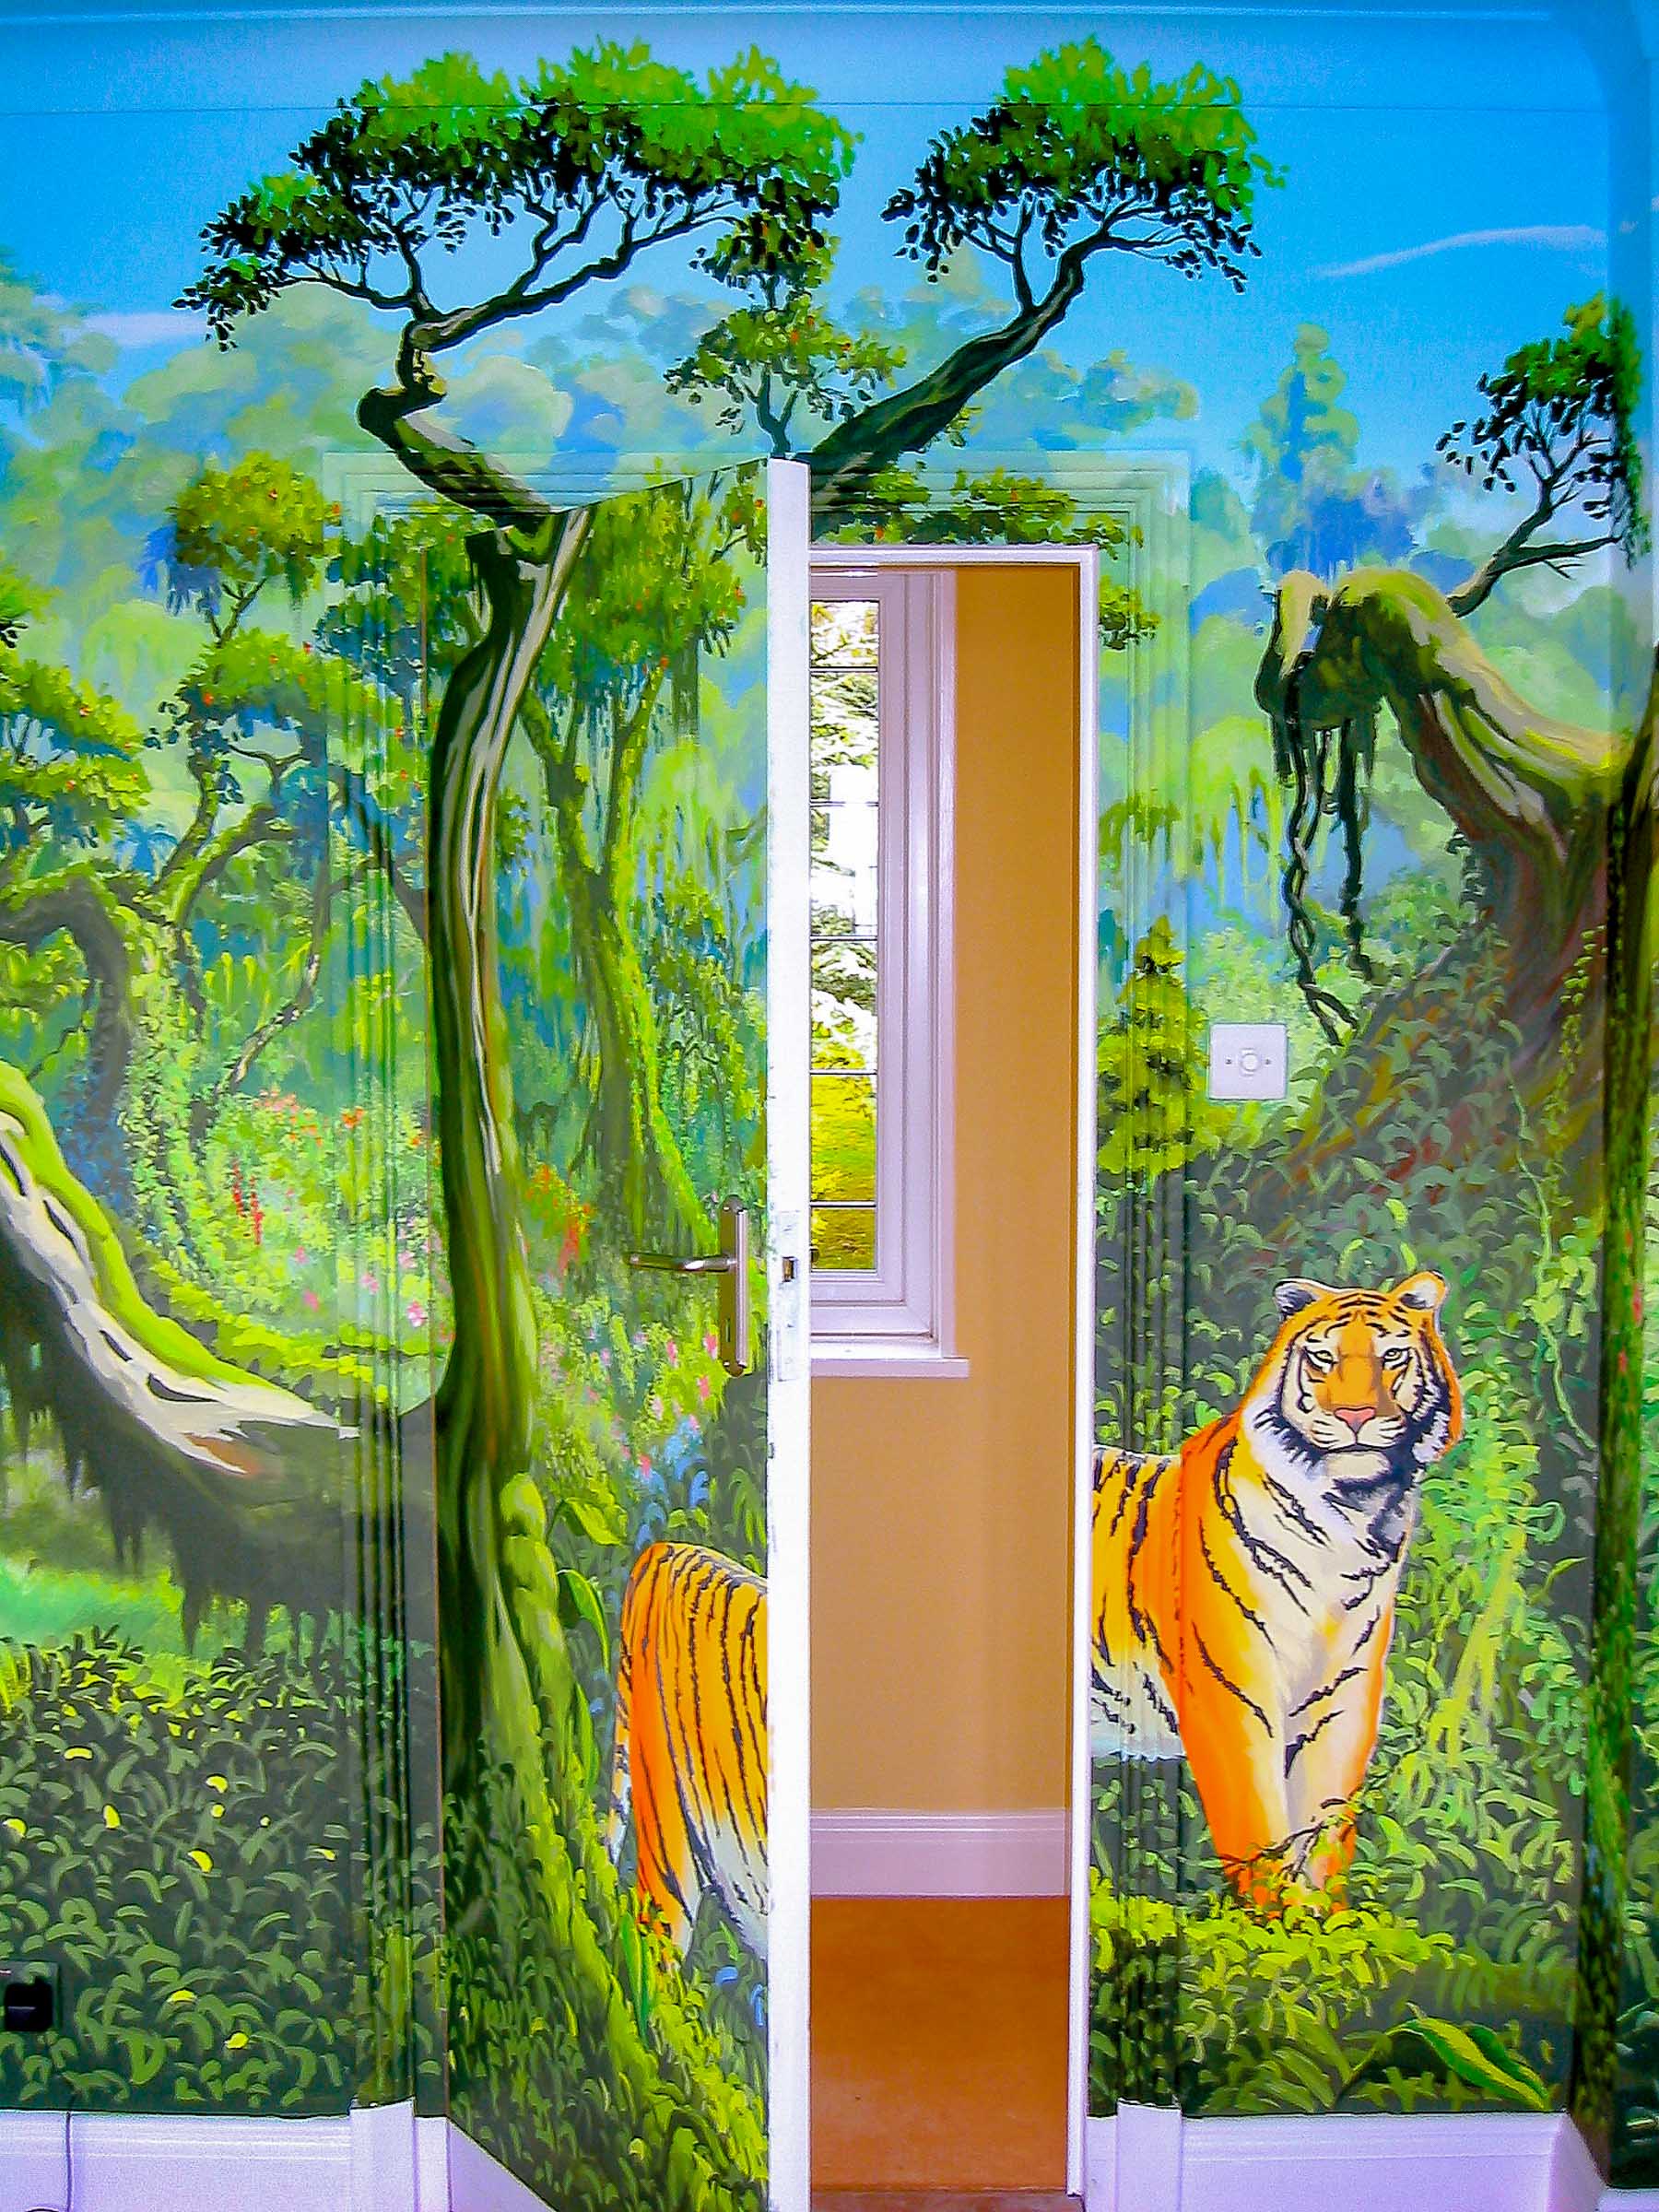 This image shows the bedroom door open, splitting the tiger in half!